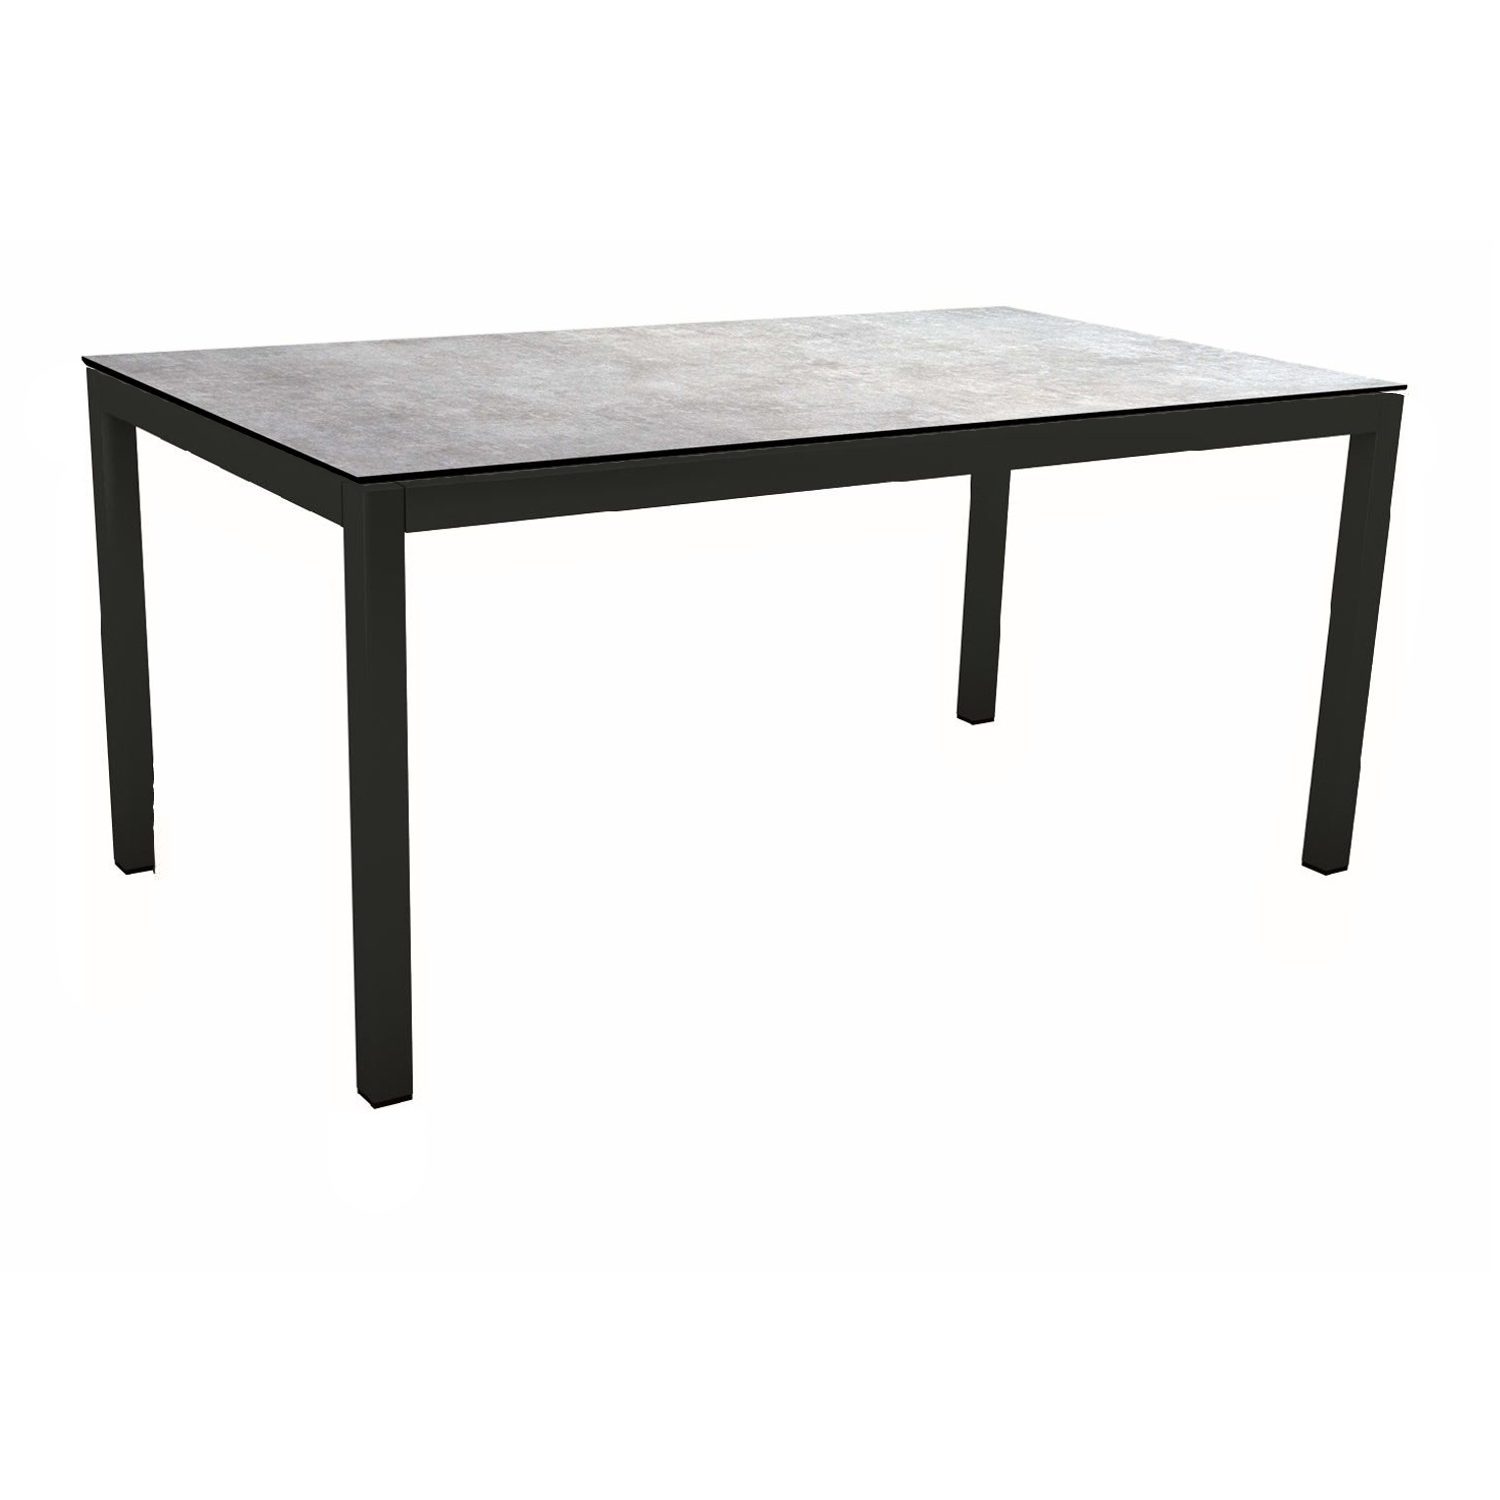 Stern Gartentisch, Gestell Aluminium schwarz matt, Tischplatte HPL Metallic Grau, 160x90 cm